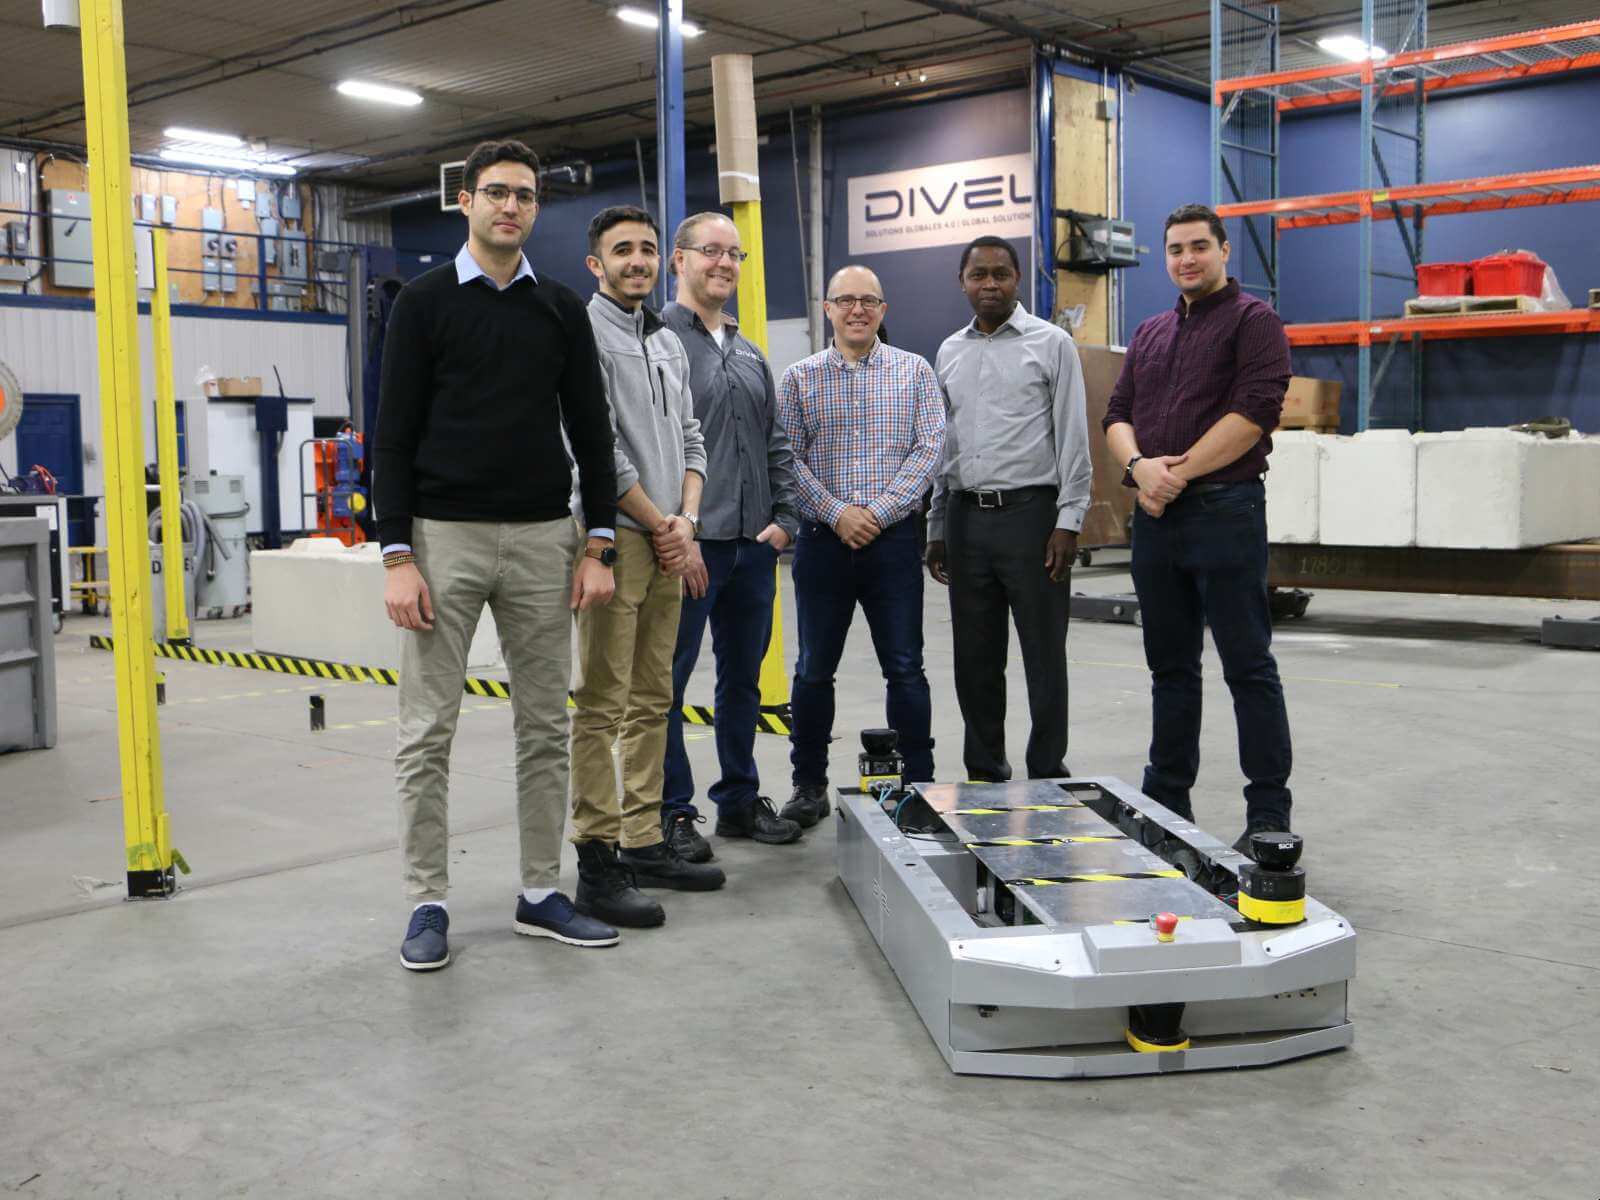 Des membres de l'équipe de la Chaire DIVEL présentent leur prototype de véhicule autoguidé (2019).